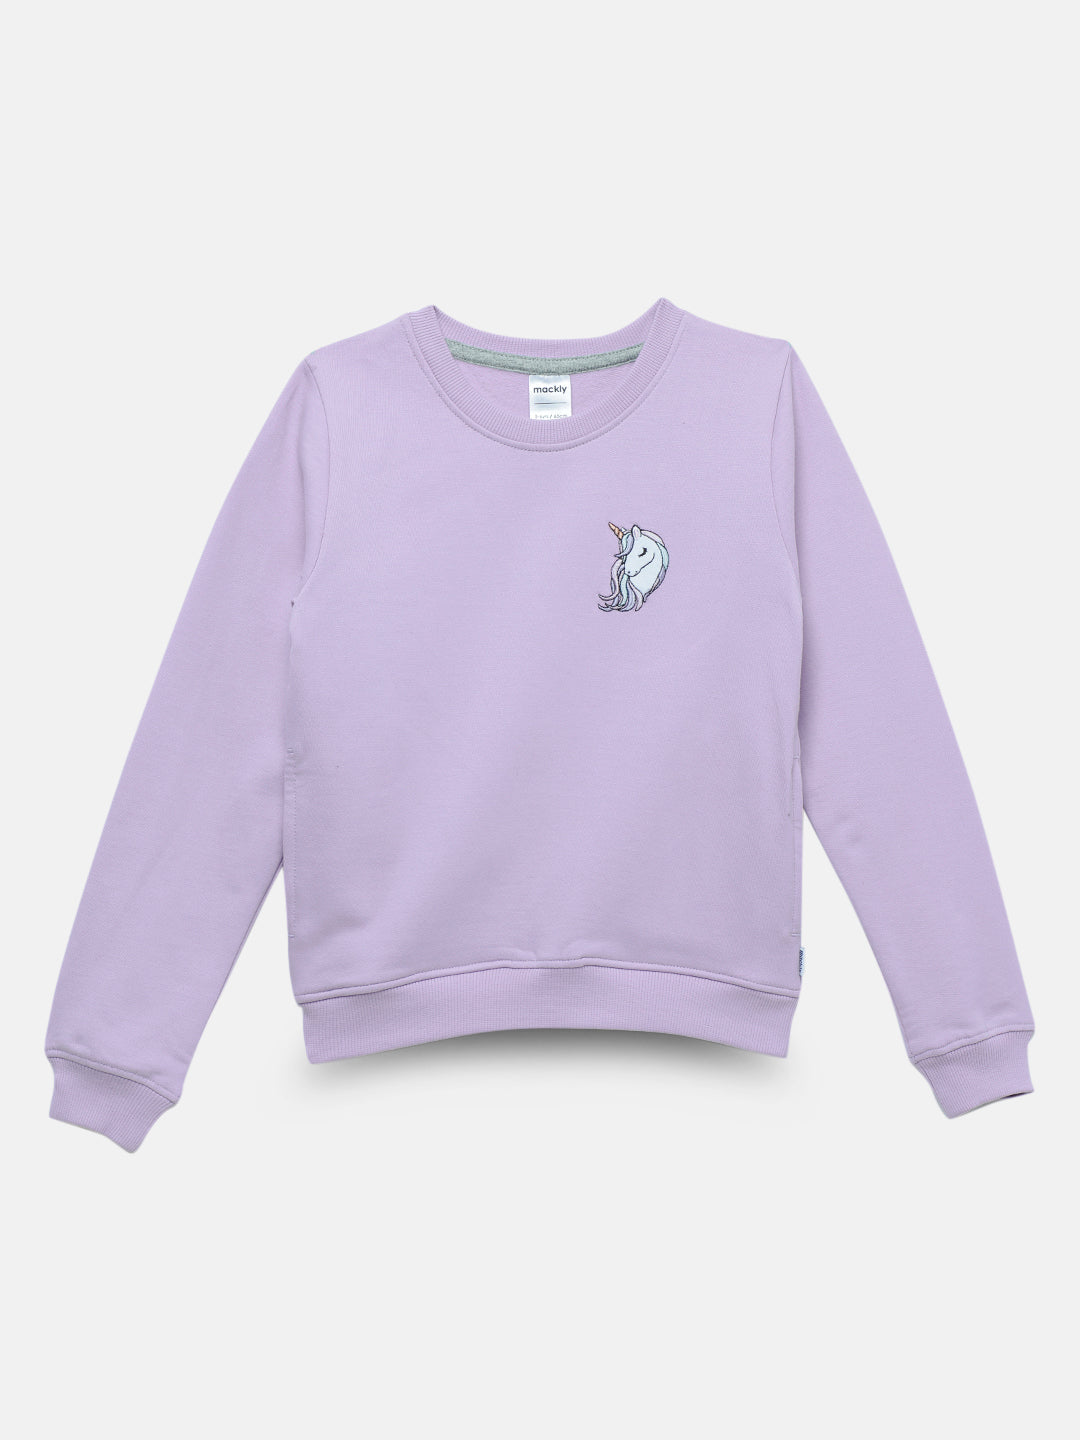 Girls Unicorn Crewneck Sweatshirt